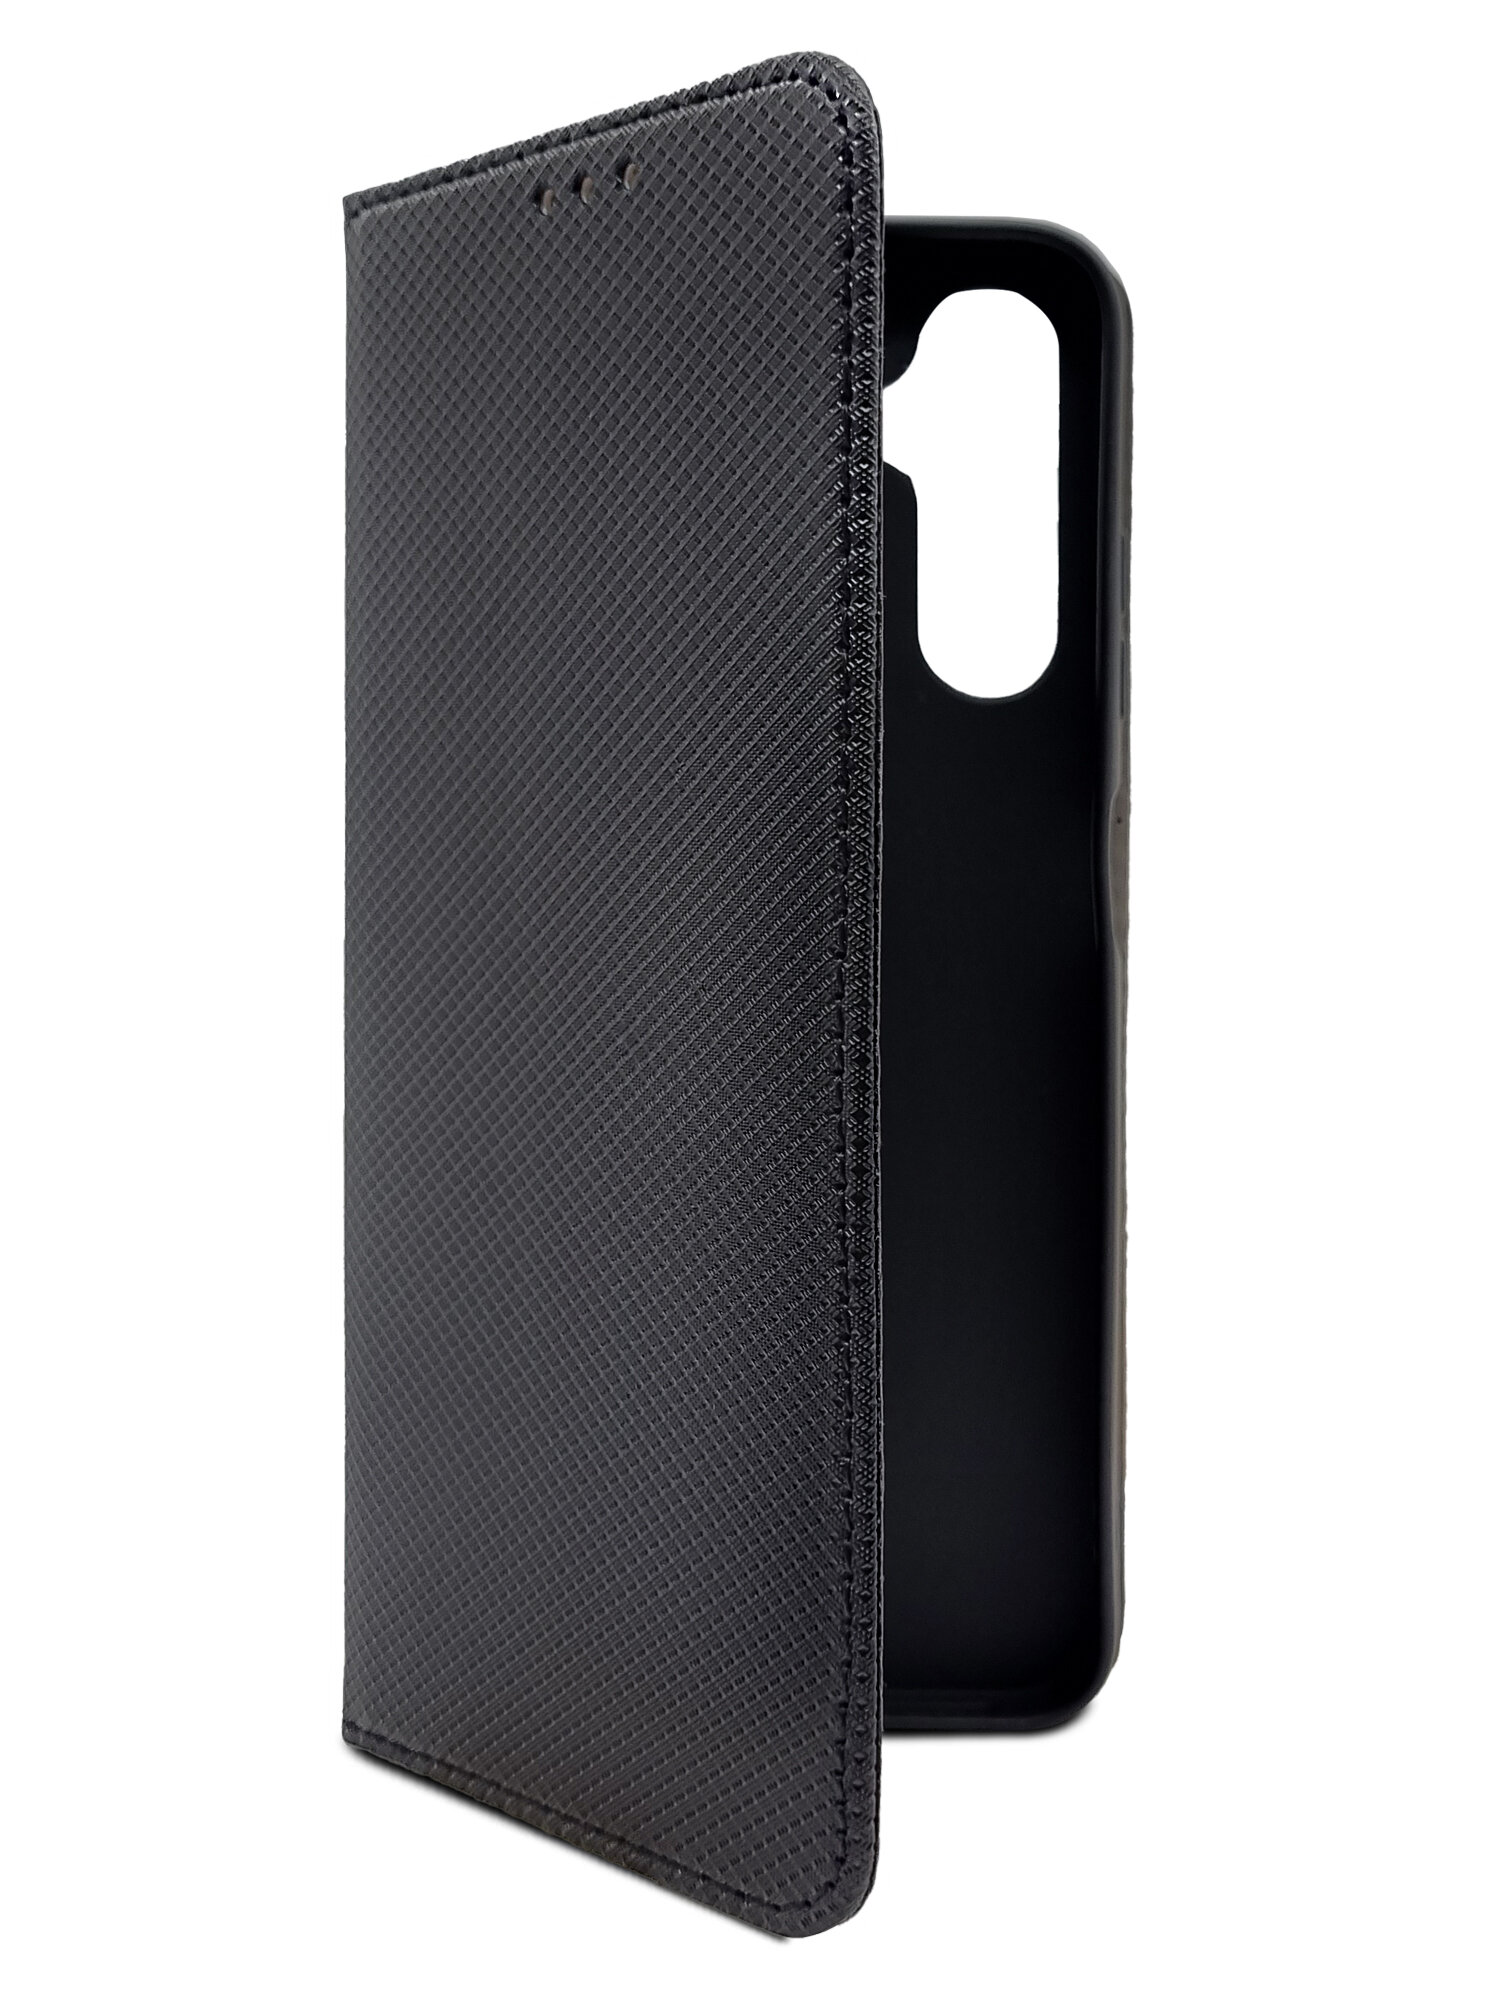 Чехол на Samsung Galaxy A05s (Самсунг Галакси А05с) черный книжка экокожа с функцией подставки отделением для карт магнитами Book case плетенка Brozo